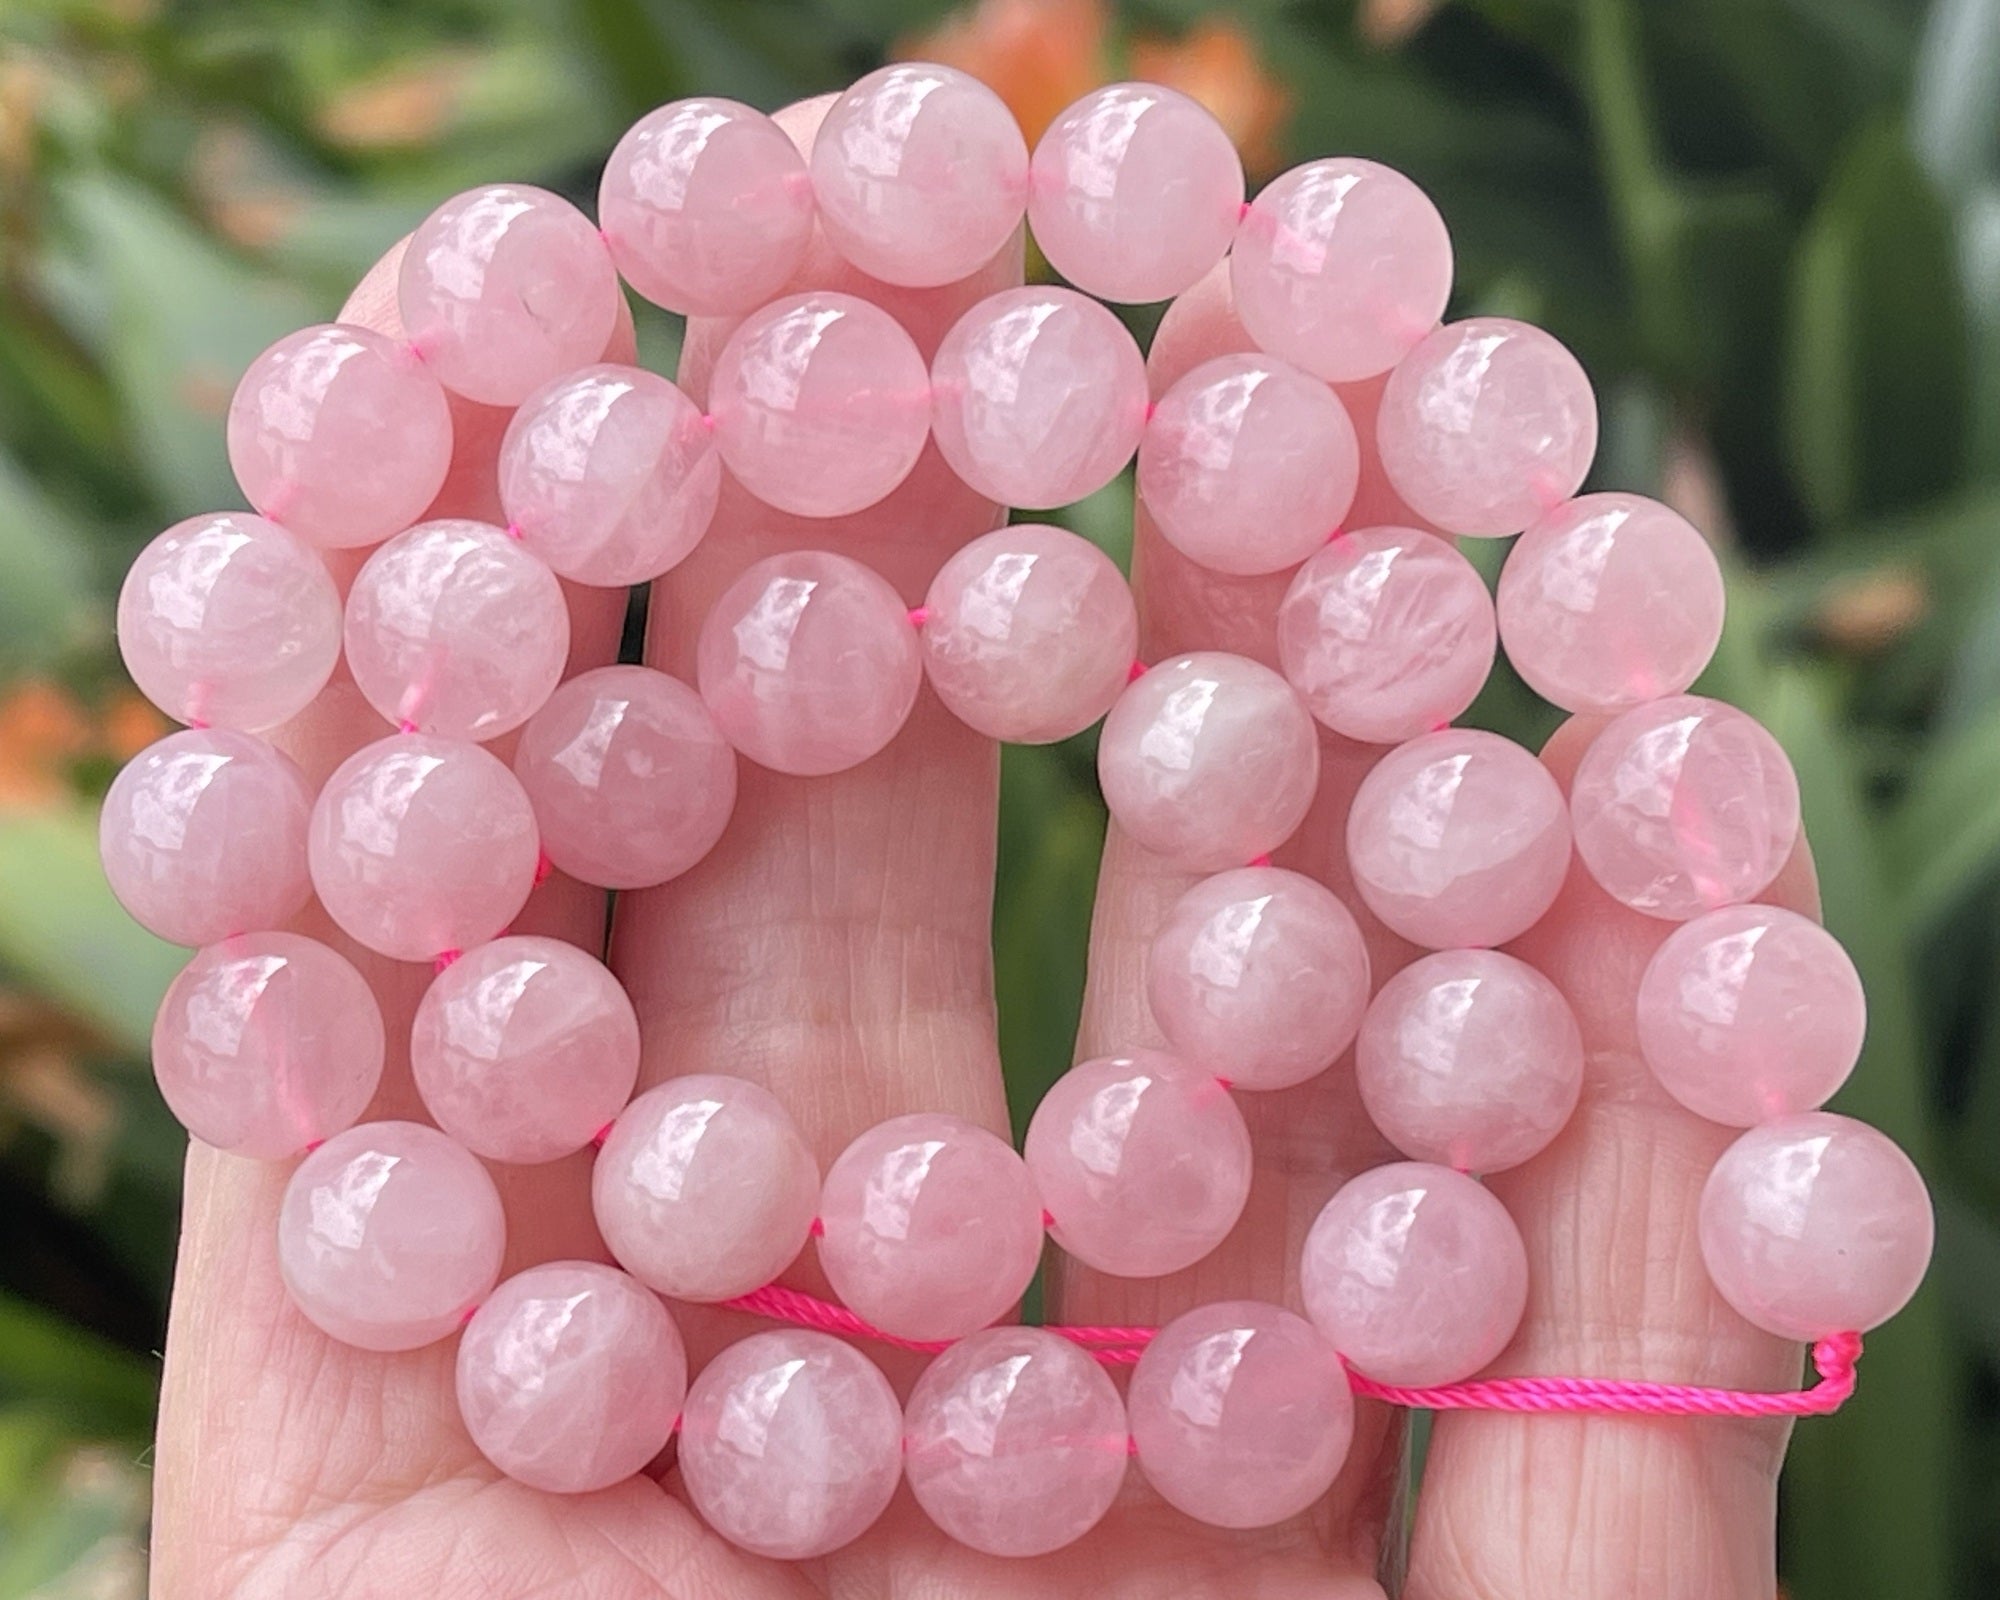 Madagascar Rose Quartz 10mm round natural gemstone beads 15.5" strand - Oz Beads 